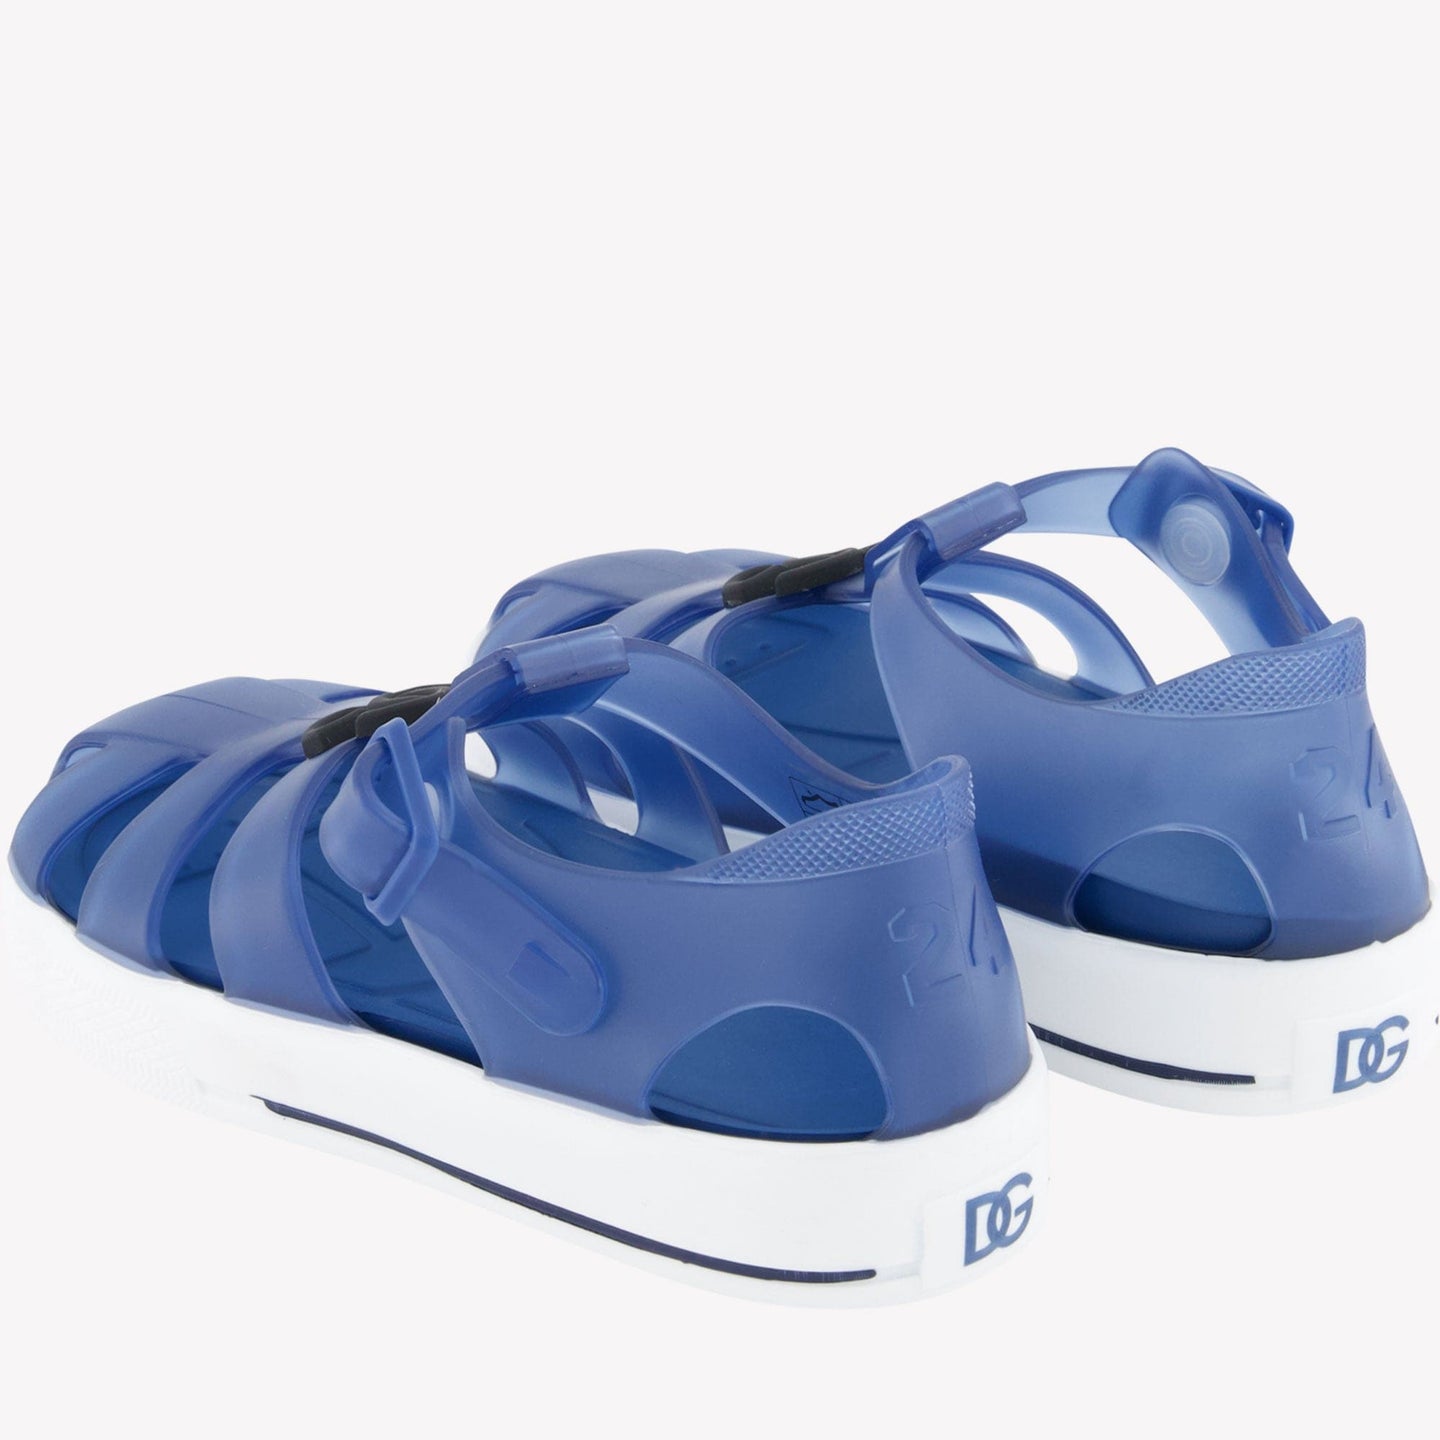 Dolce & Gabbana Kinder Unisex Sandalen Blauw 19